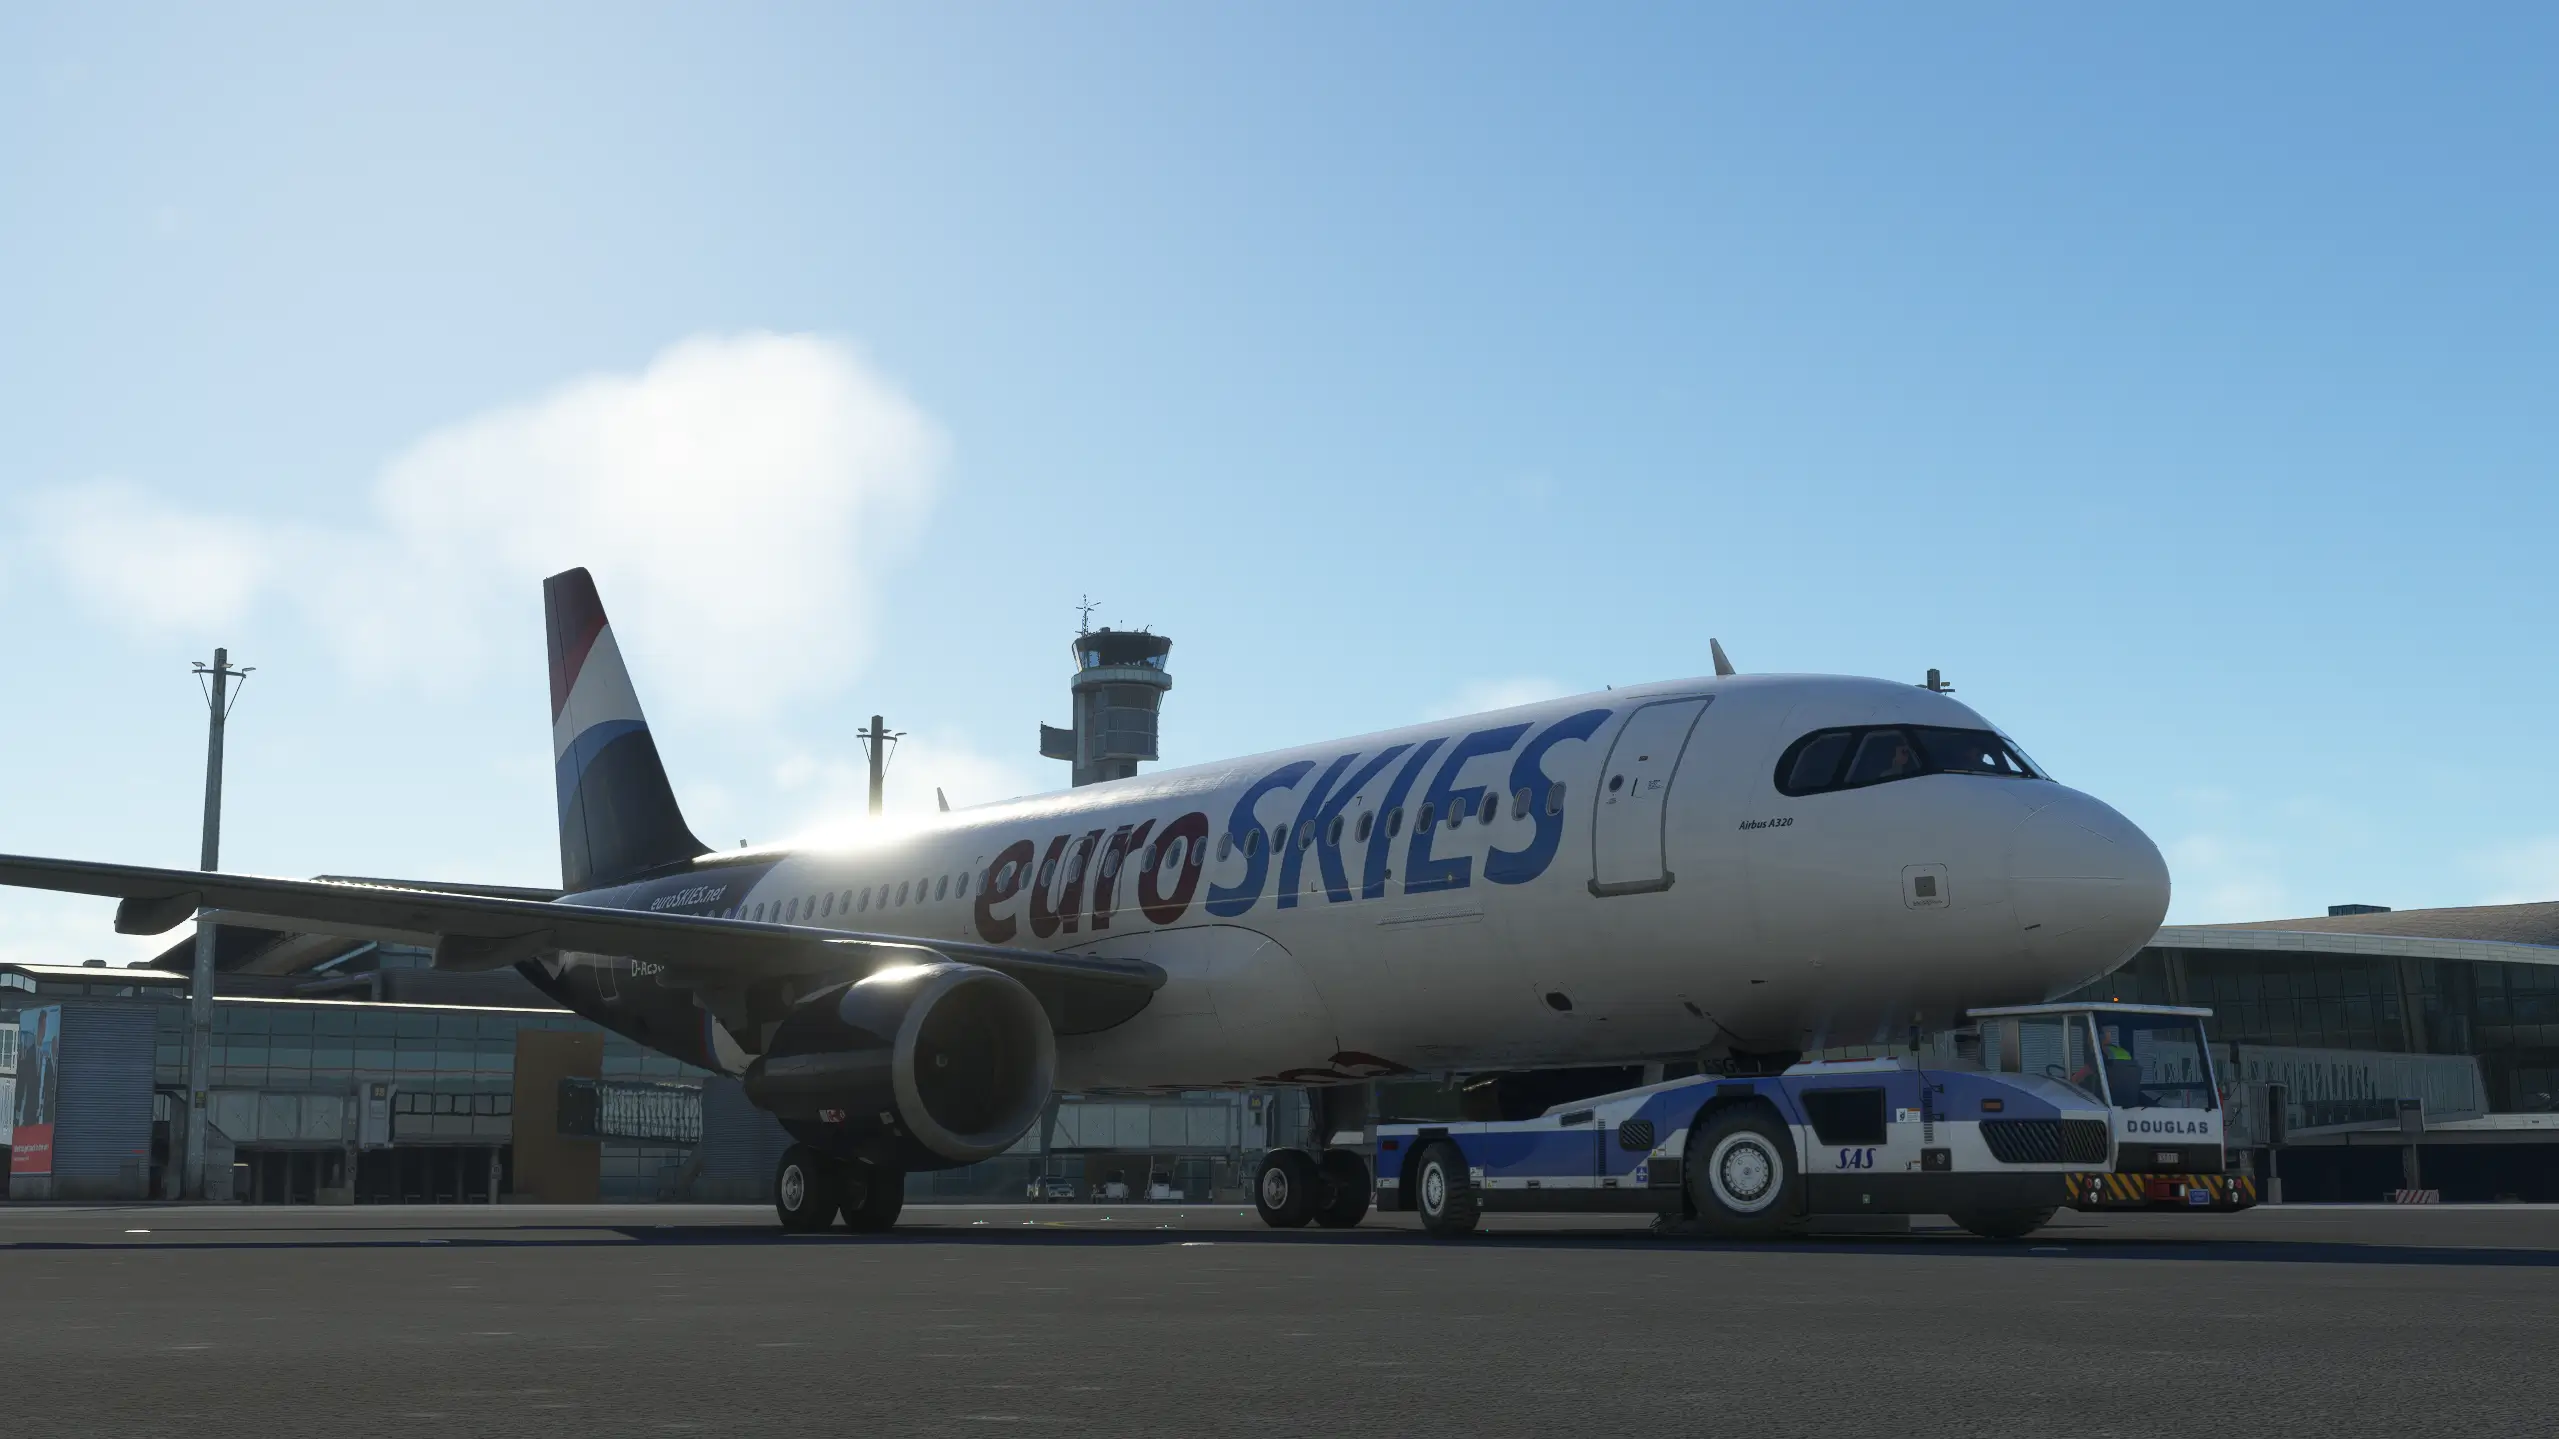 euroSKIES virtual airline Airbus  bereit für den Flugbetrieb beim zurückrollen